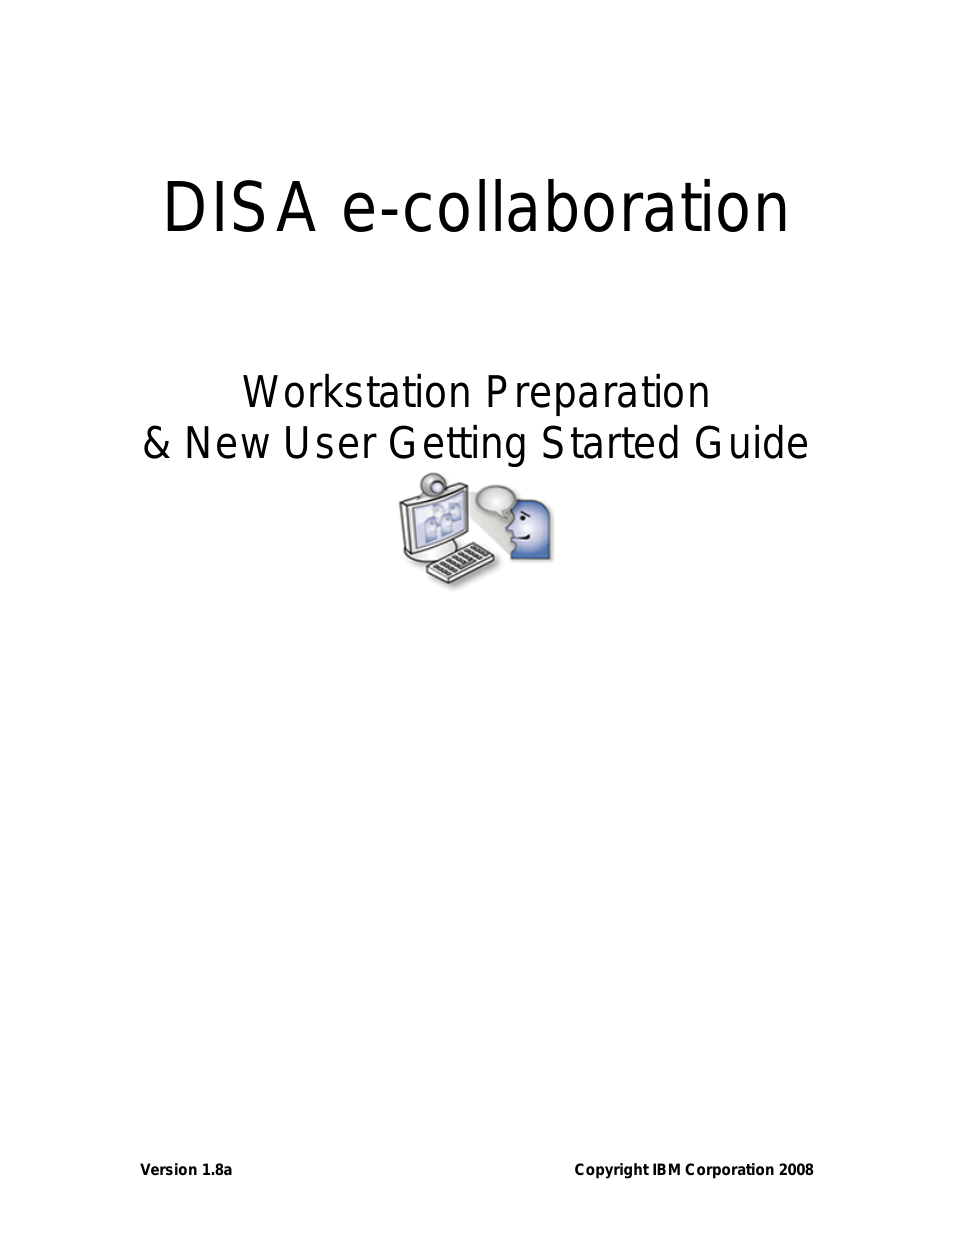 DISA e-collaboration